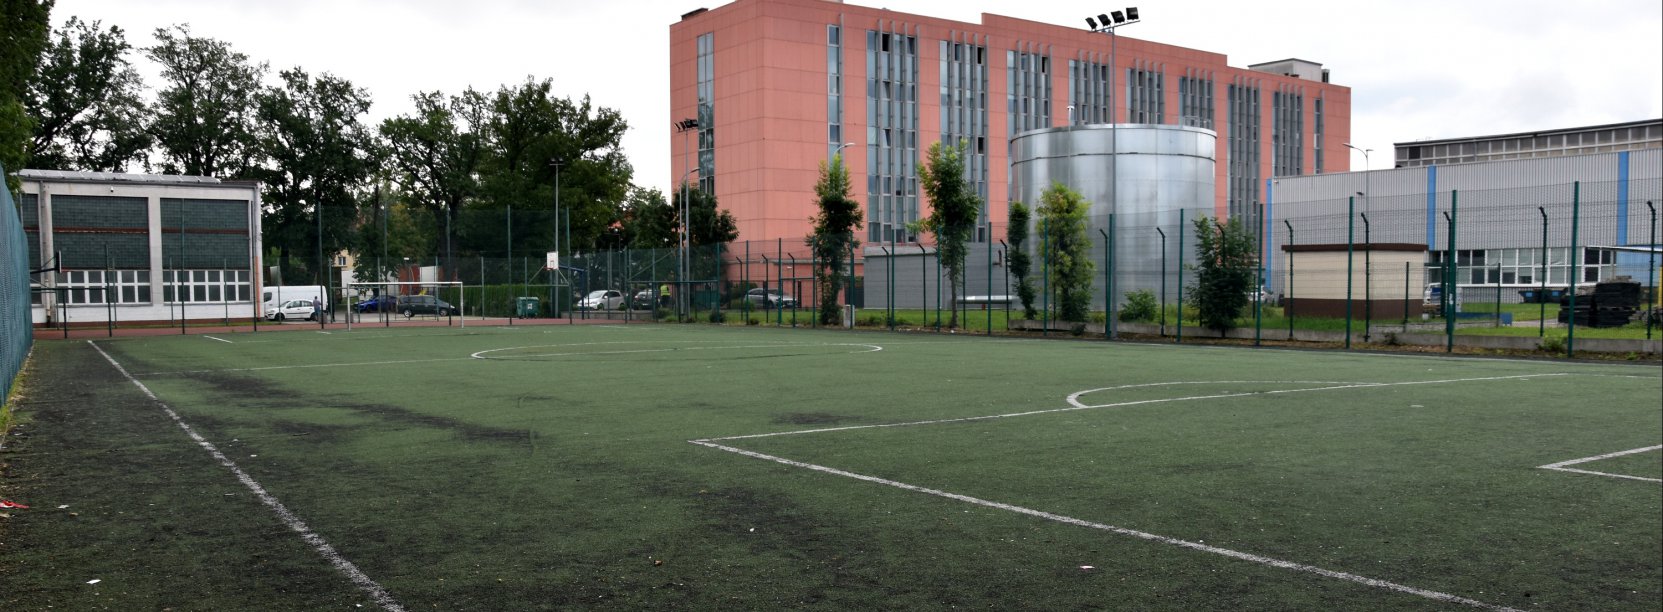 Boisko piłkarskie ze sztuczną trawą, za boiskiem duży czerwony budnek